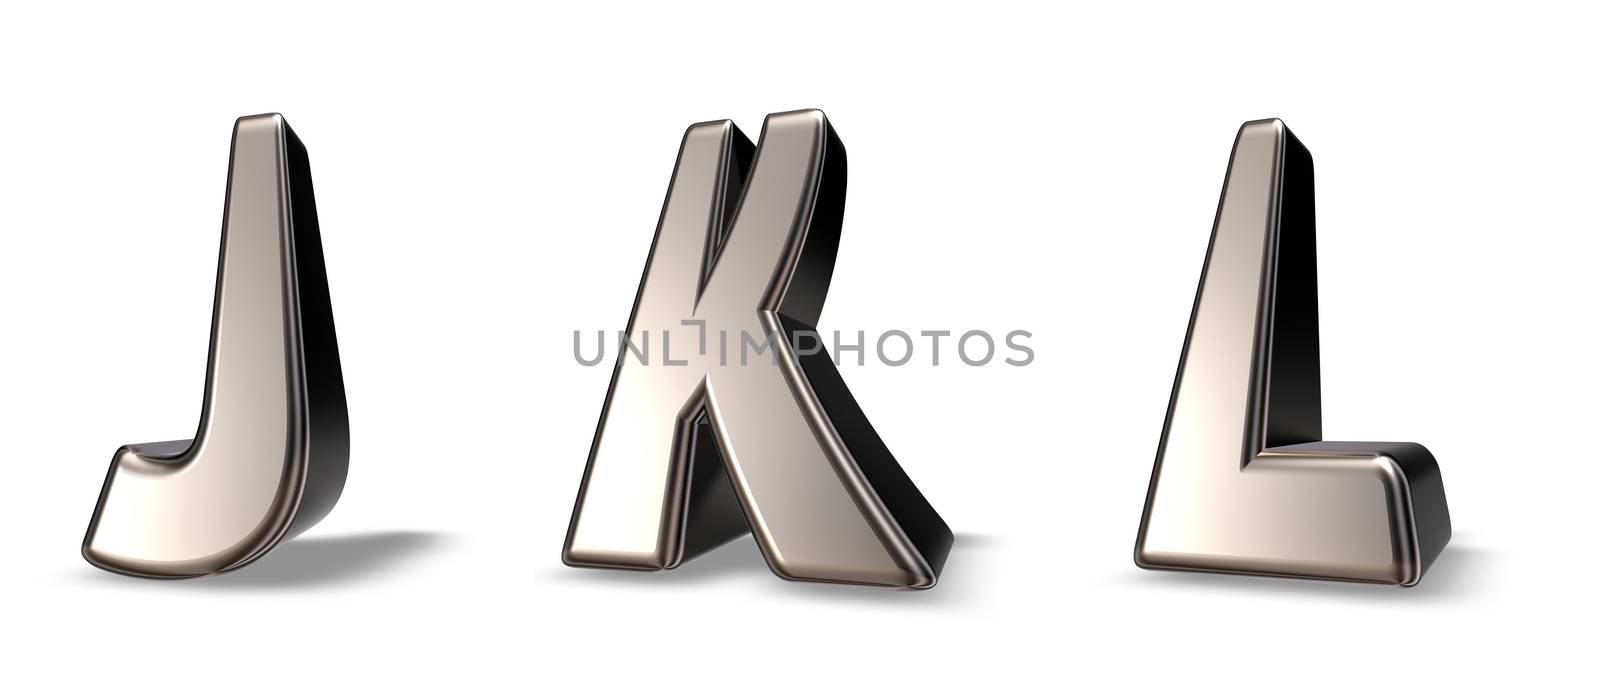 metal letters jkl on white background - 3d illustration